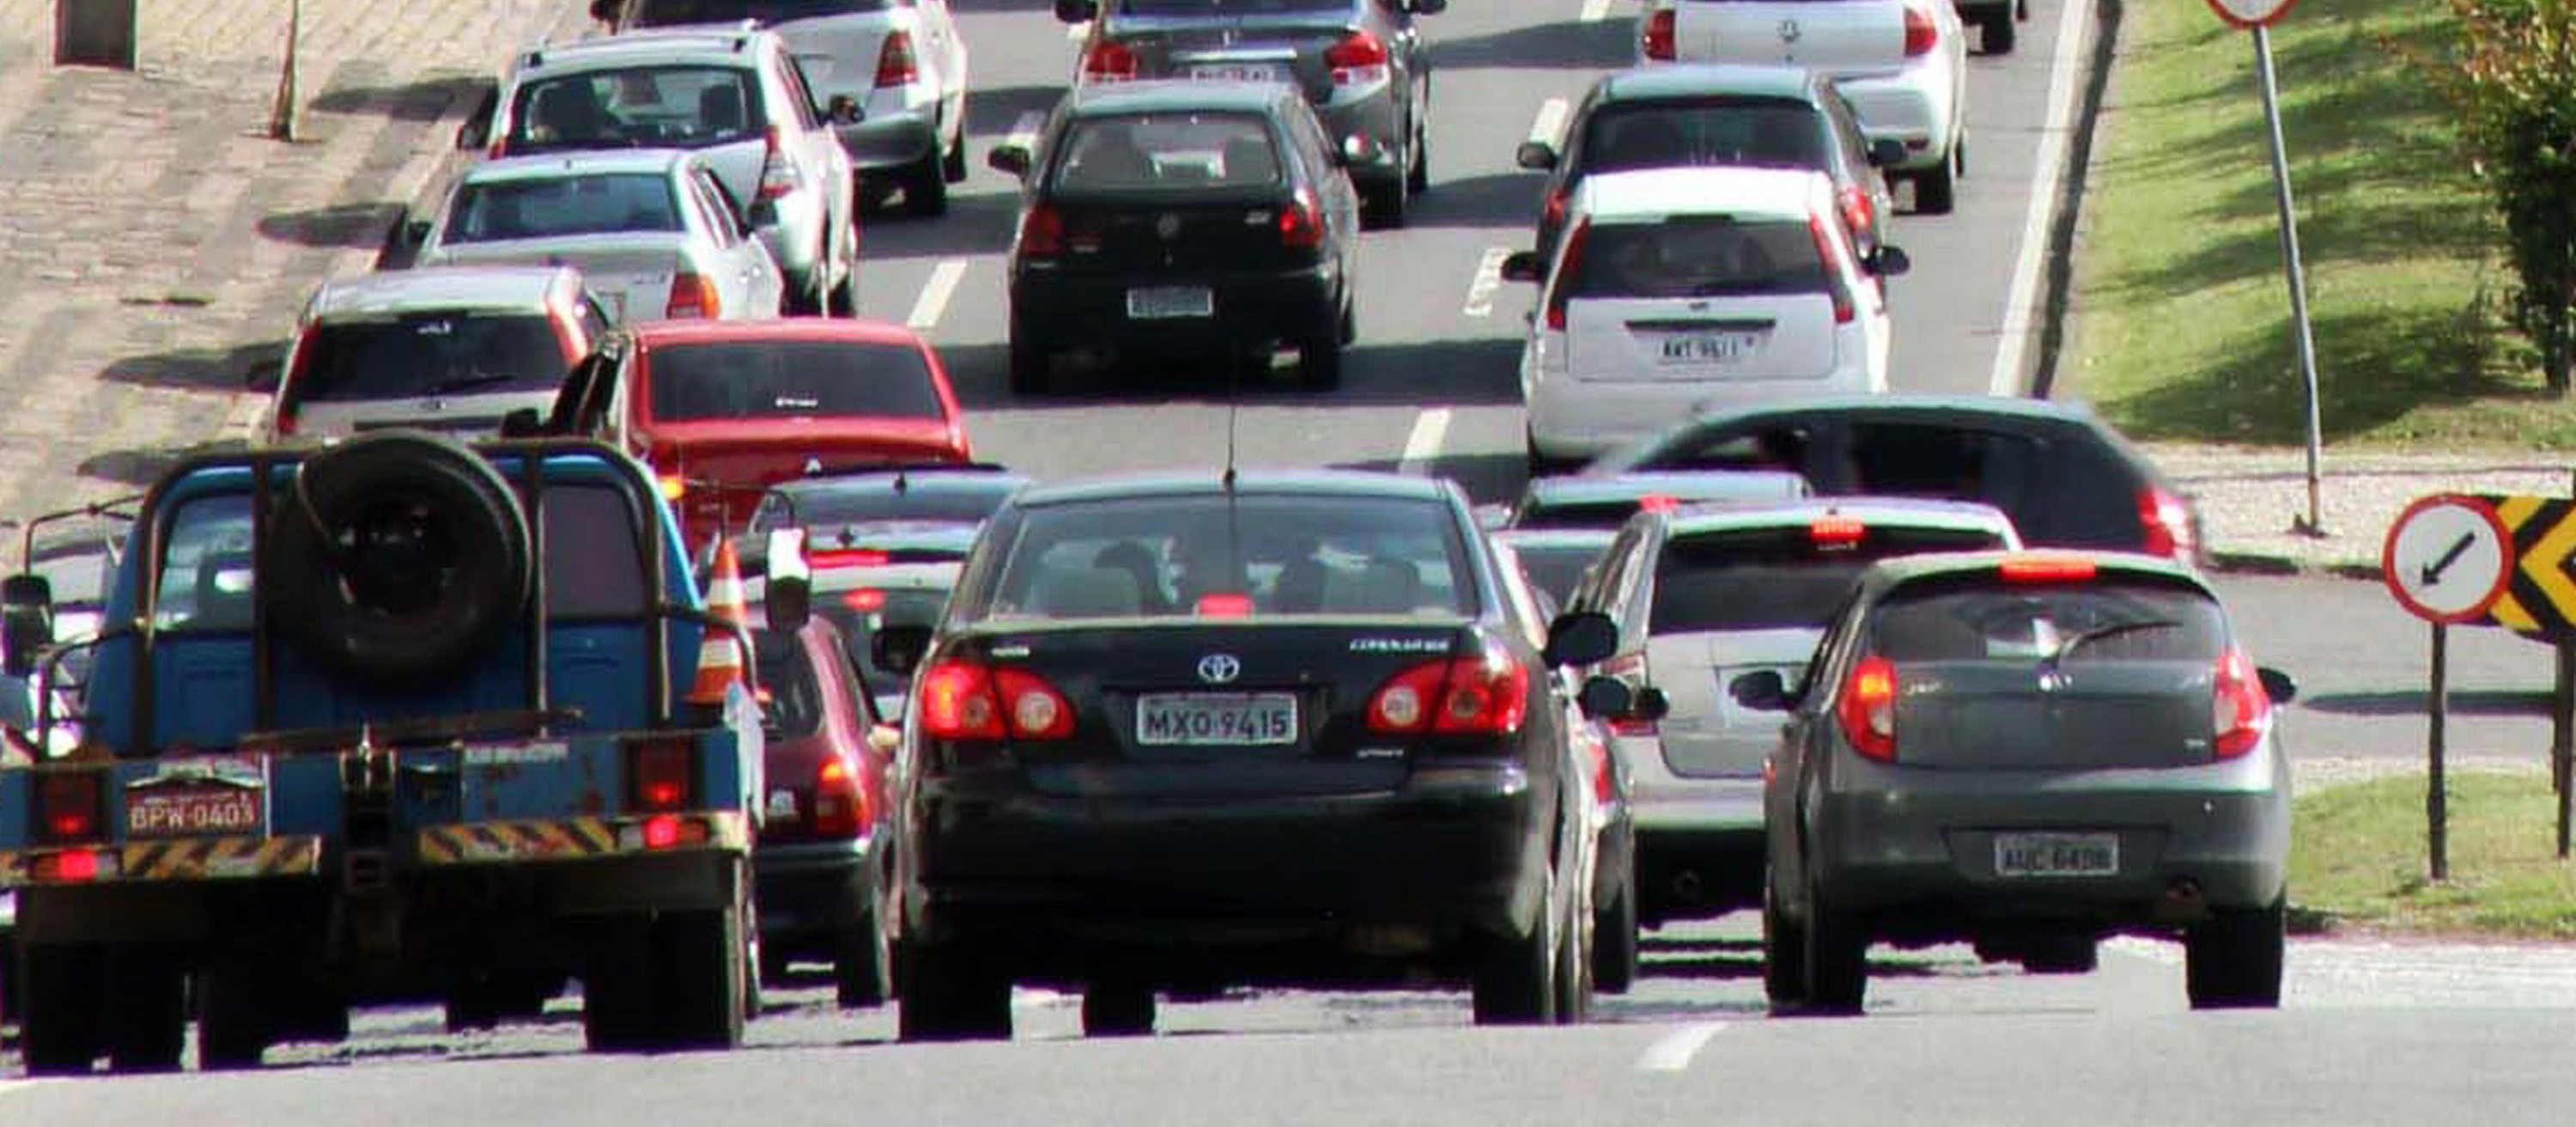 Em março, o número de multas de trânsito foi quatro vezes maior do que em janeiro